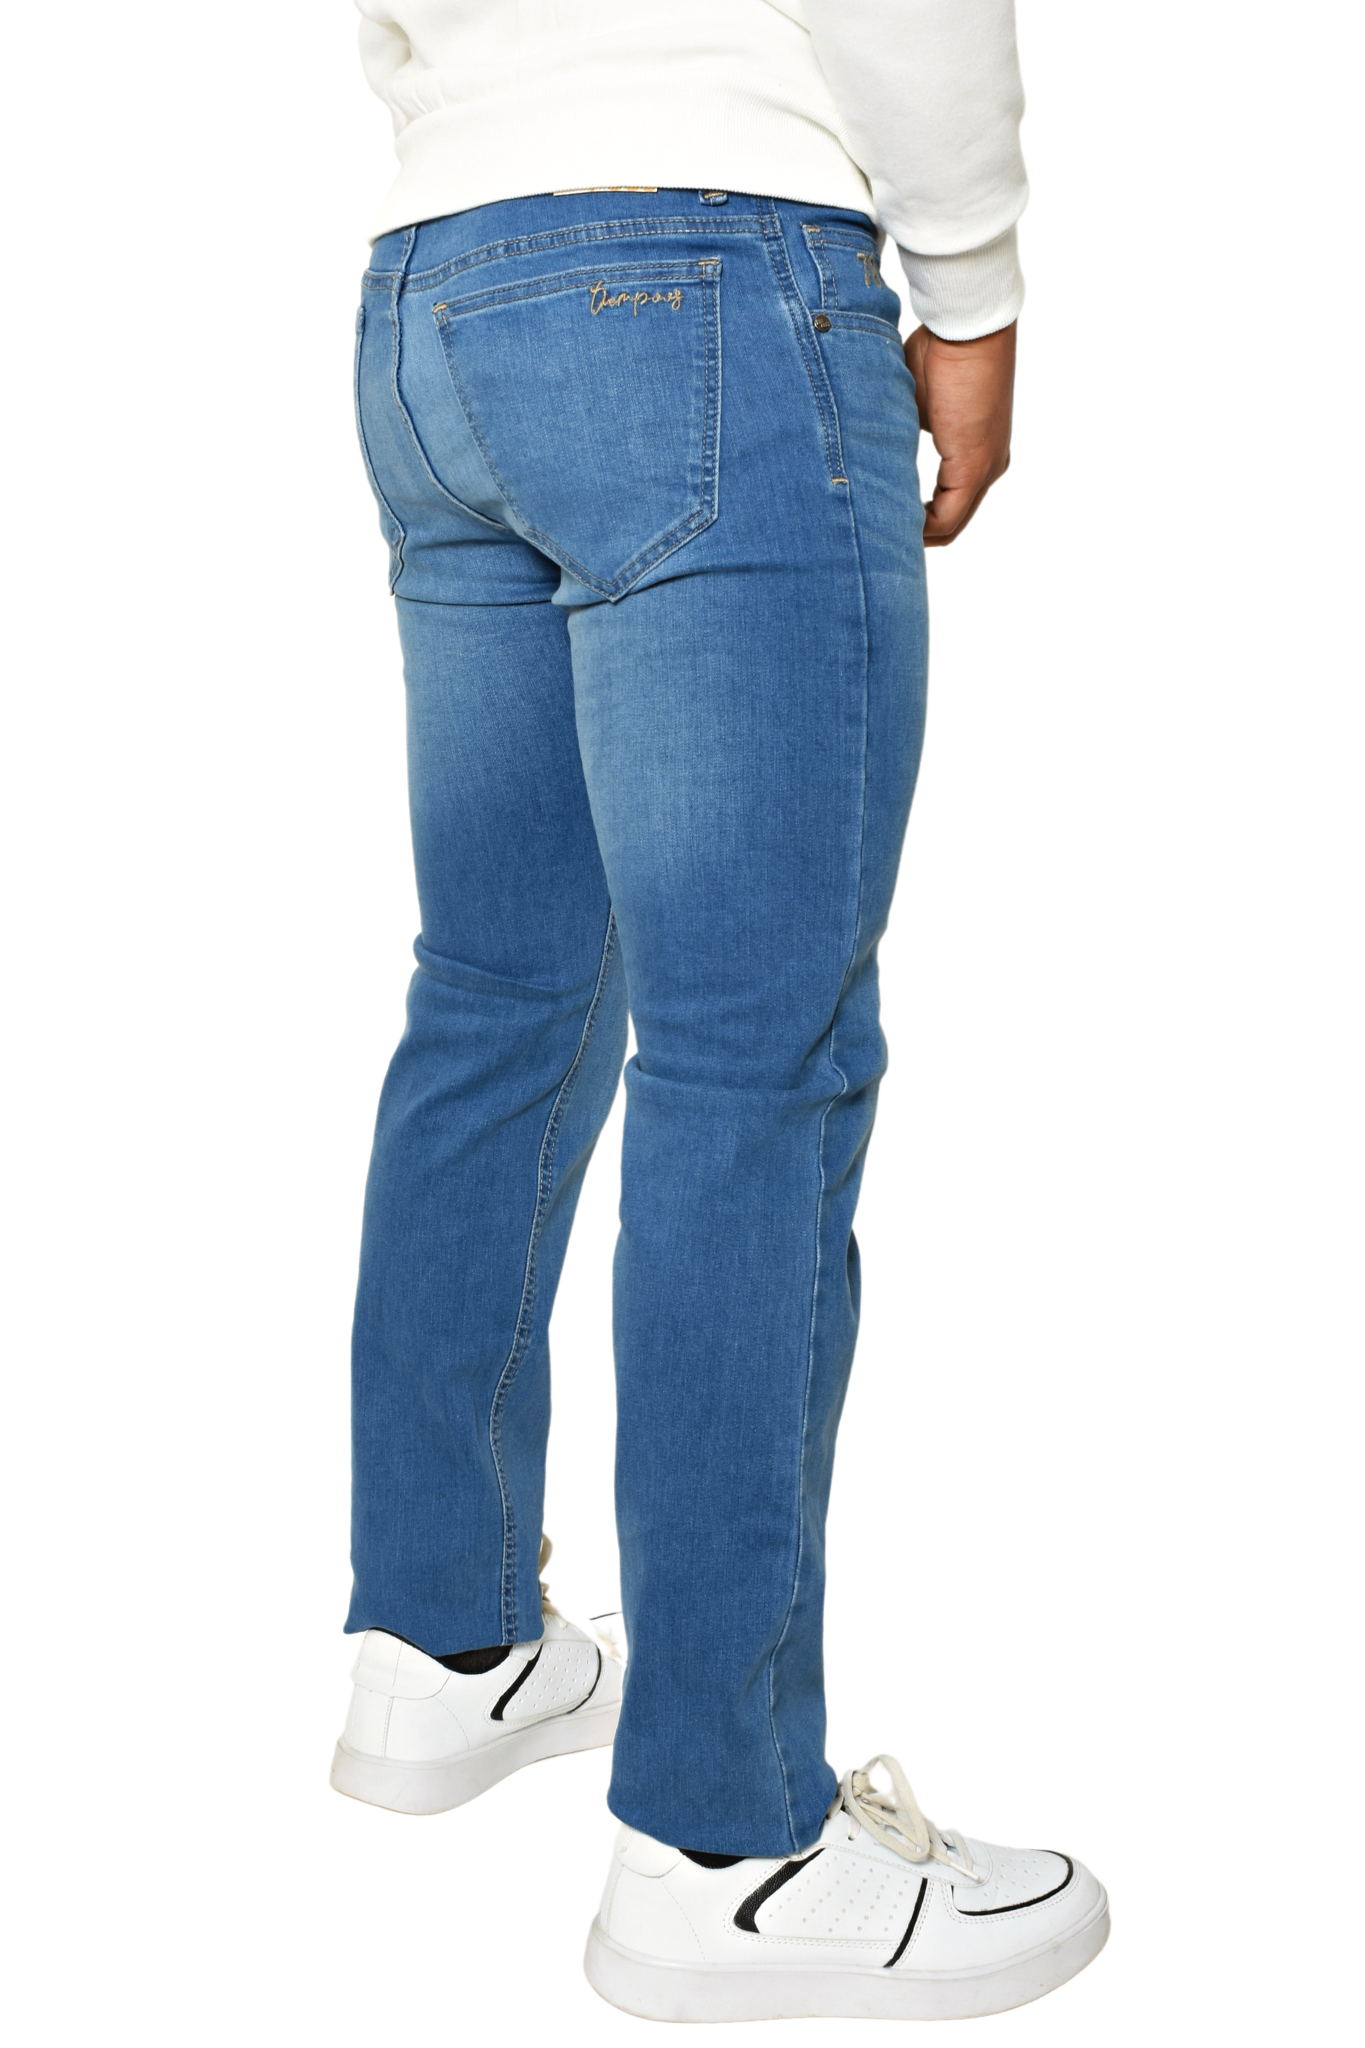 Pantalón de Mezclilla Azul Claro Detalle Letras Bolsillos Slim Fit Tiempos